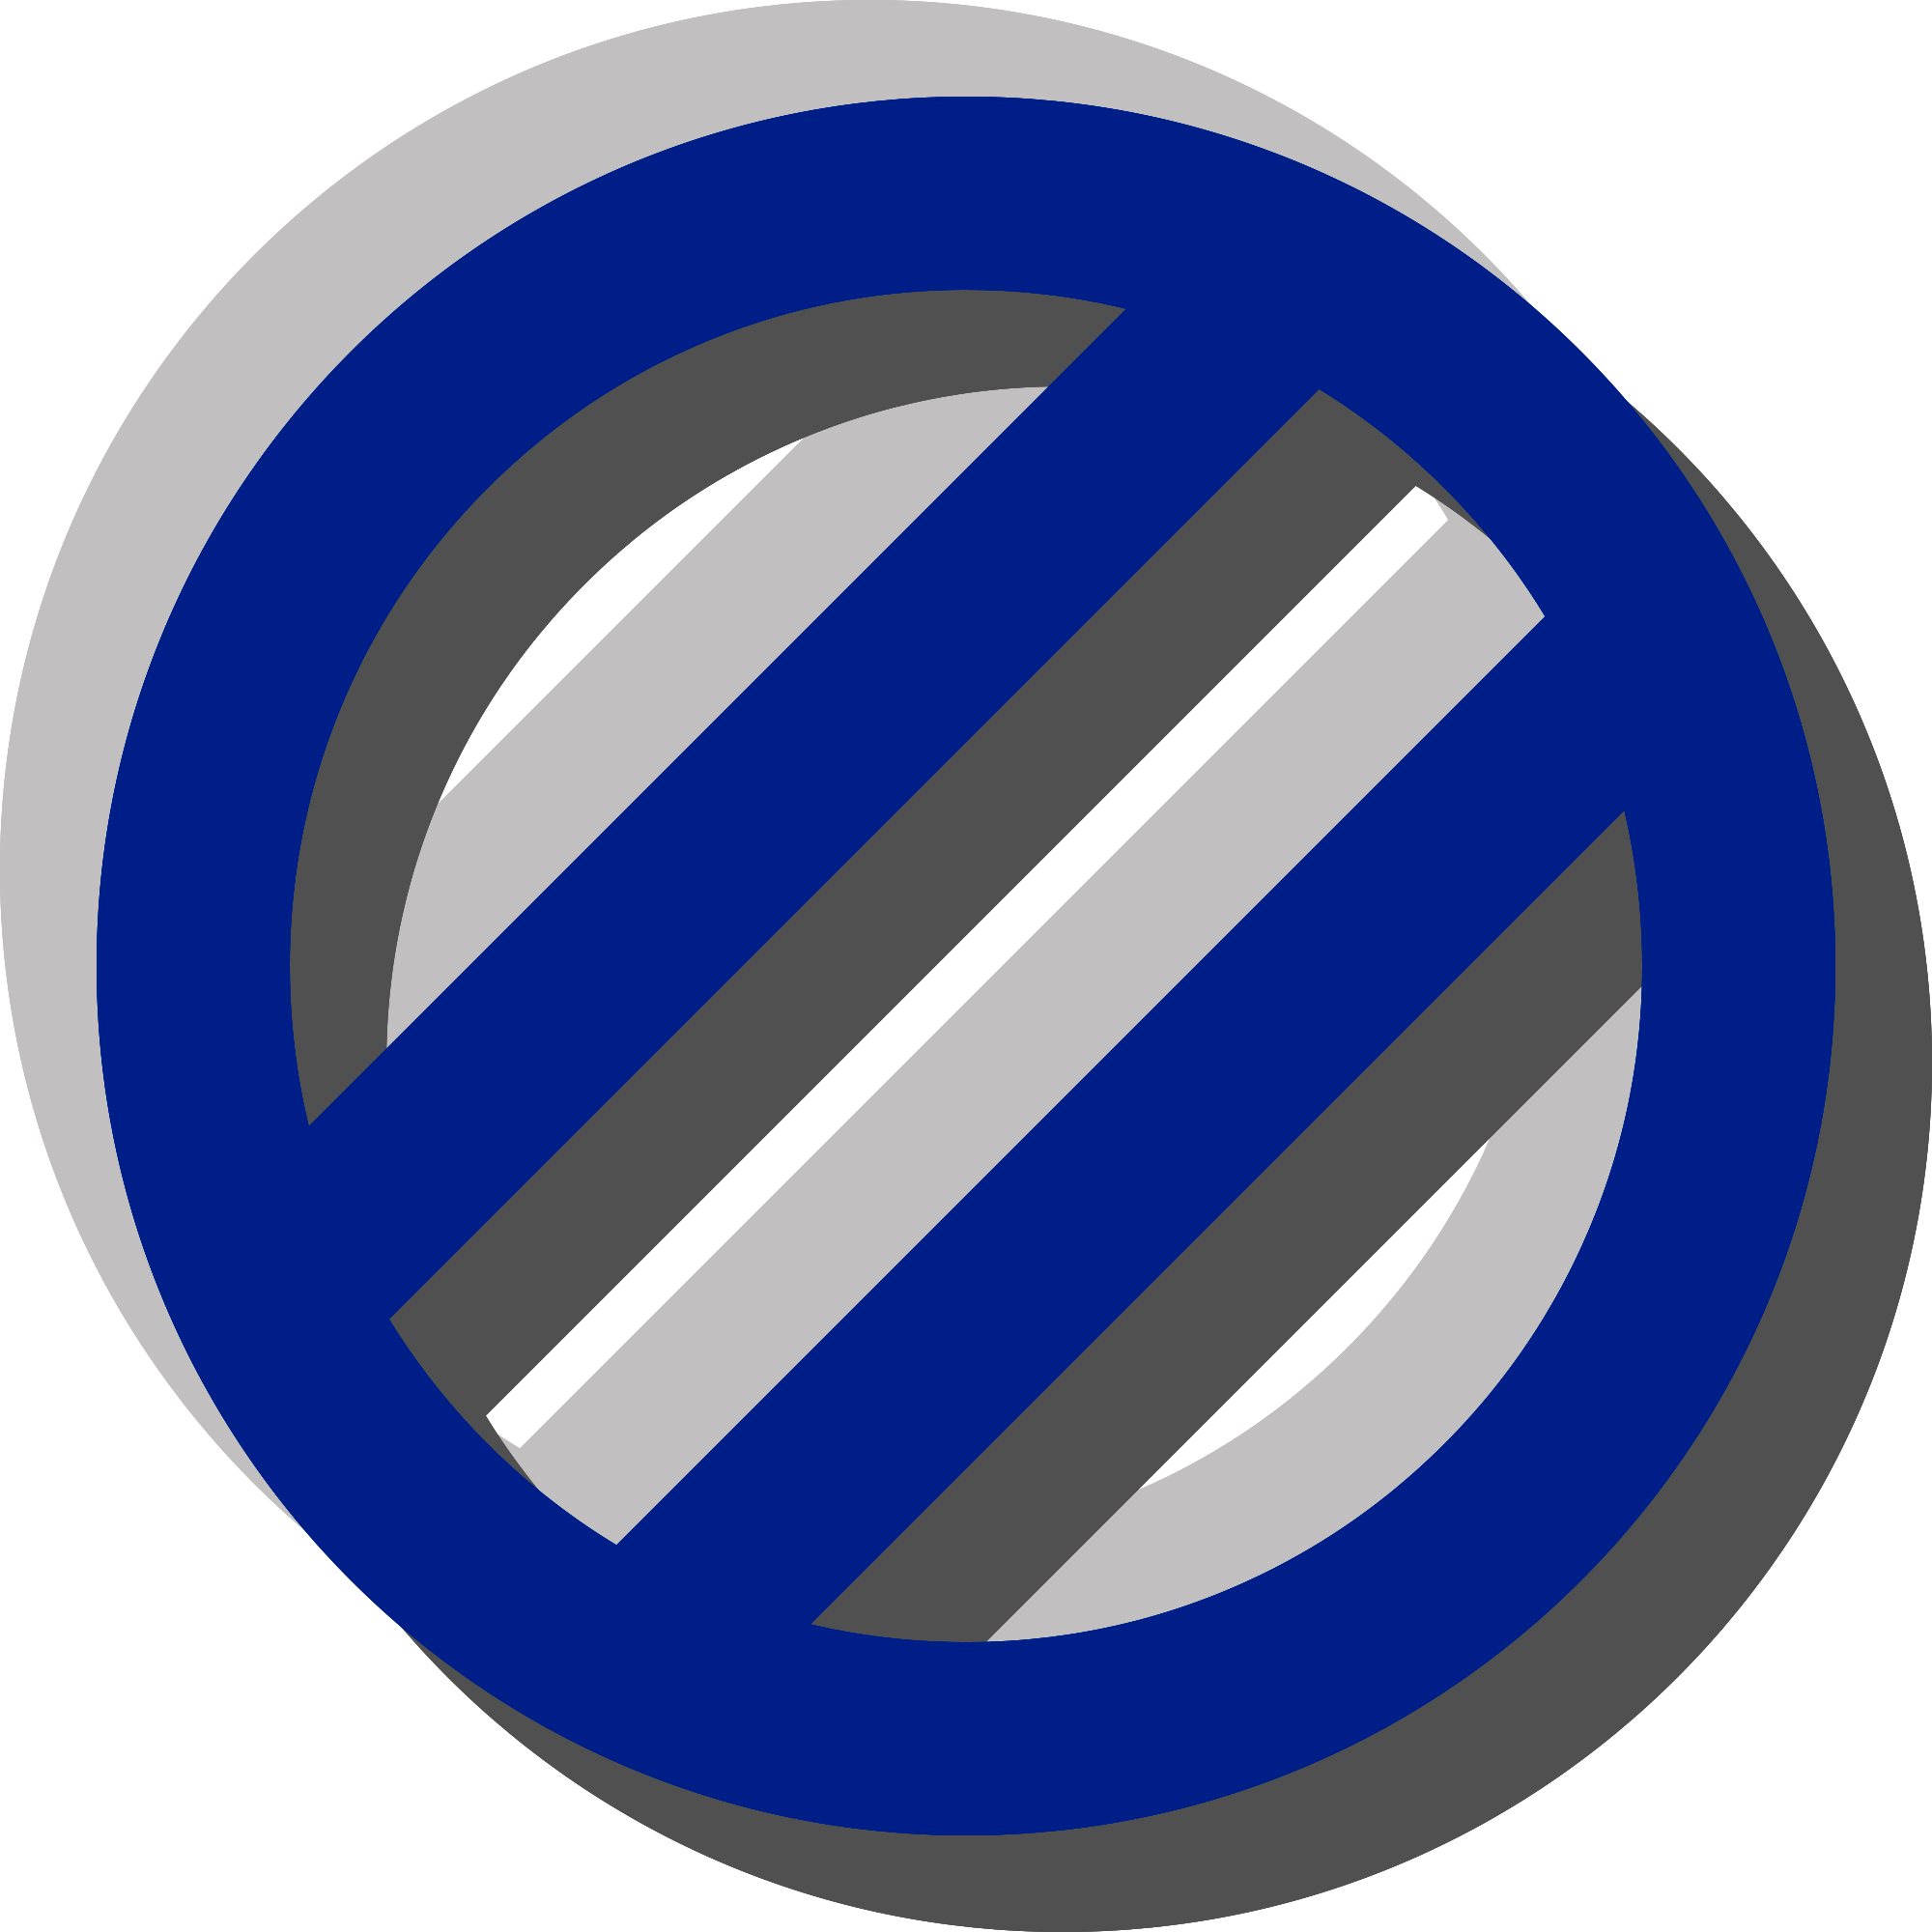 O símbolo gênero-cinza é composto pelo contorno de um círculo que também é dividido em três partes por linhas diagonais. Este símbolo é representado na imagem três vezes, estando azul marinho em seu centro e tendo supostas sombras em um tom de cinza claro e outro escuro em posições opostas.